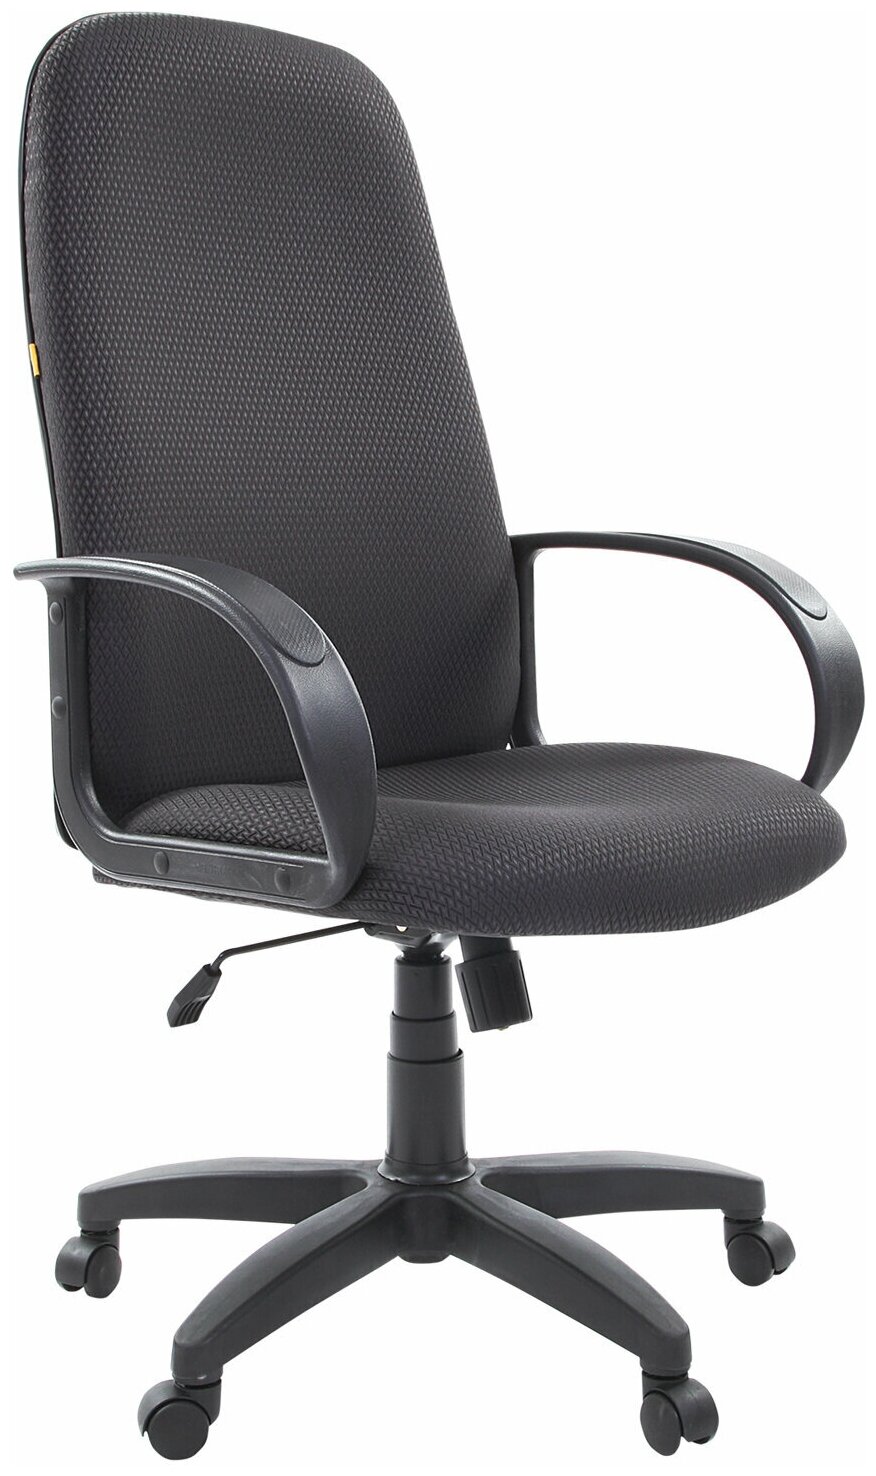 Кресло офисное СН 279 высокая спинка с подлокотниками черное-серое шт.